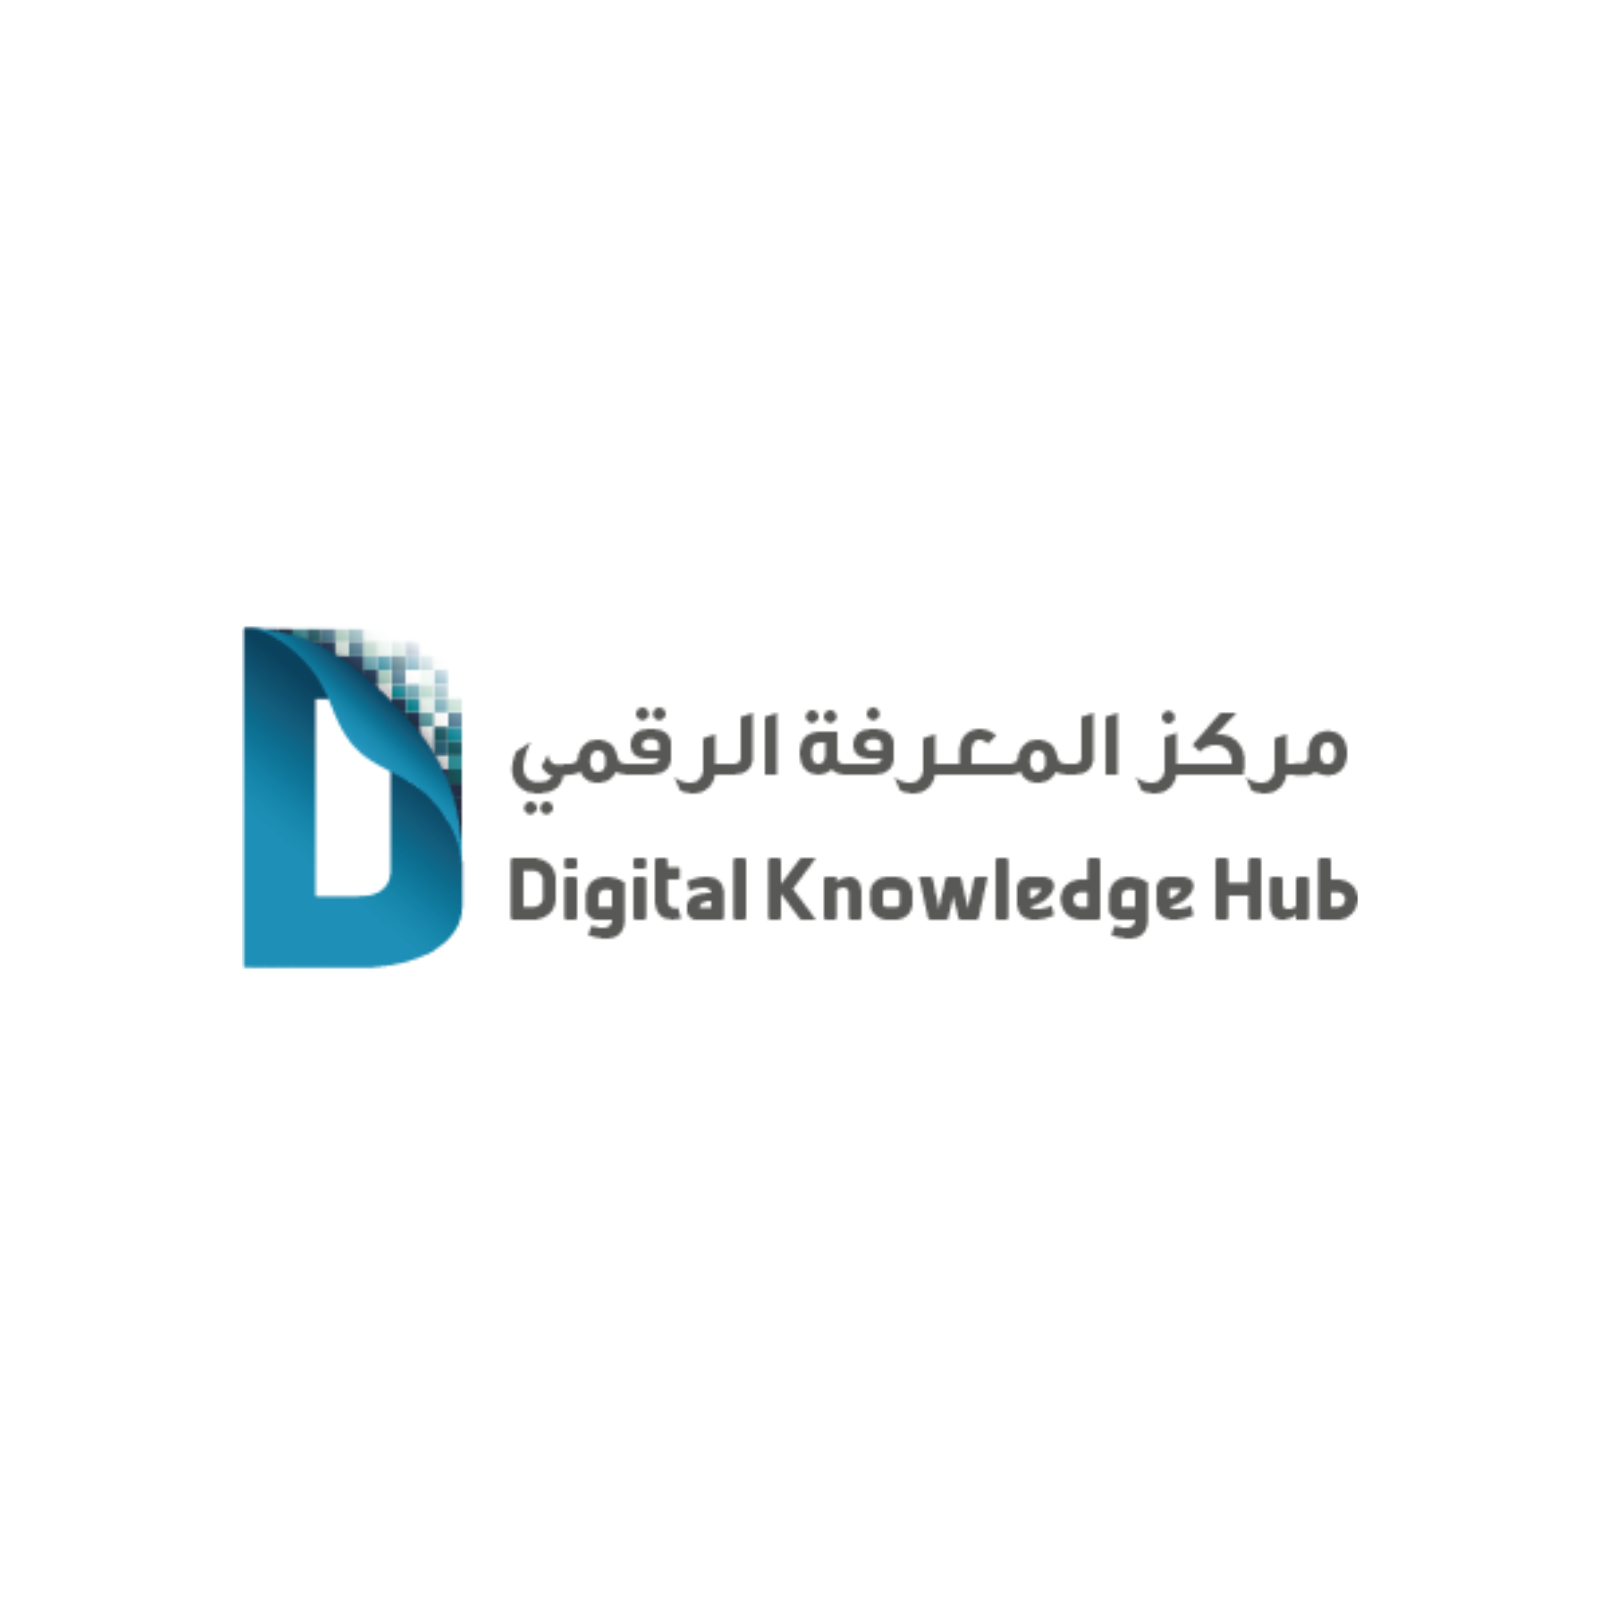 التوجهات المستقبلية فى المنصات الرقمية العربية